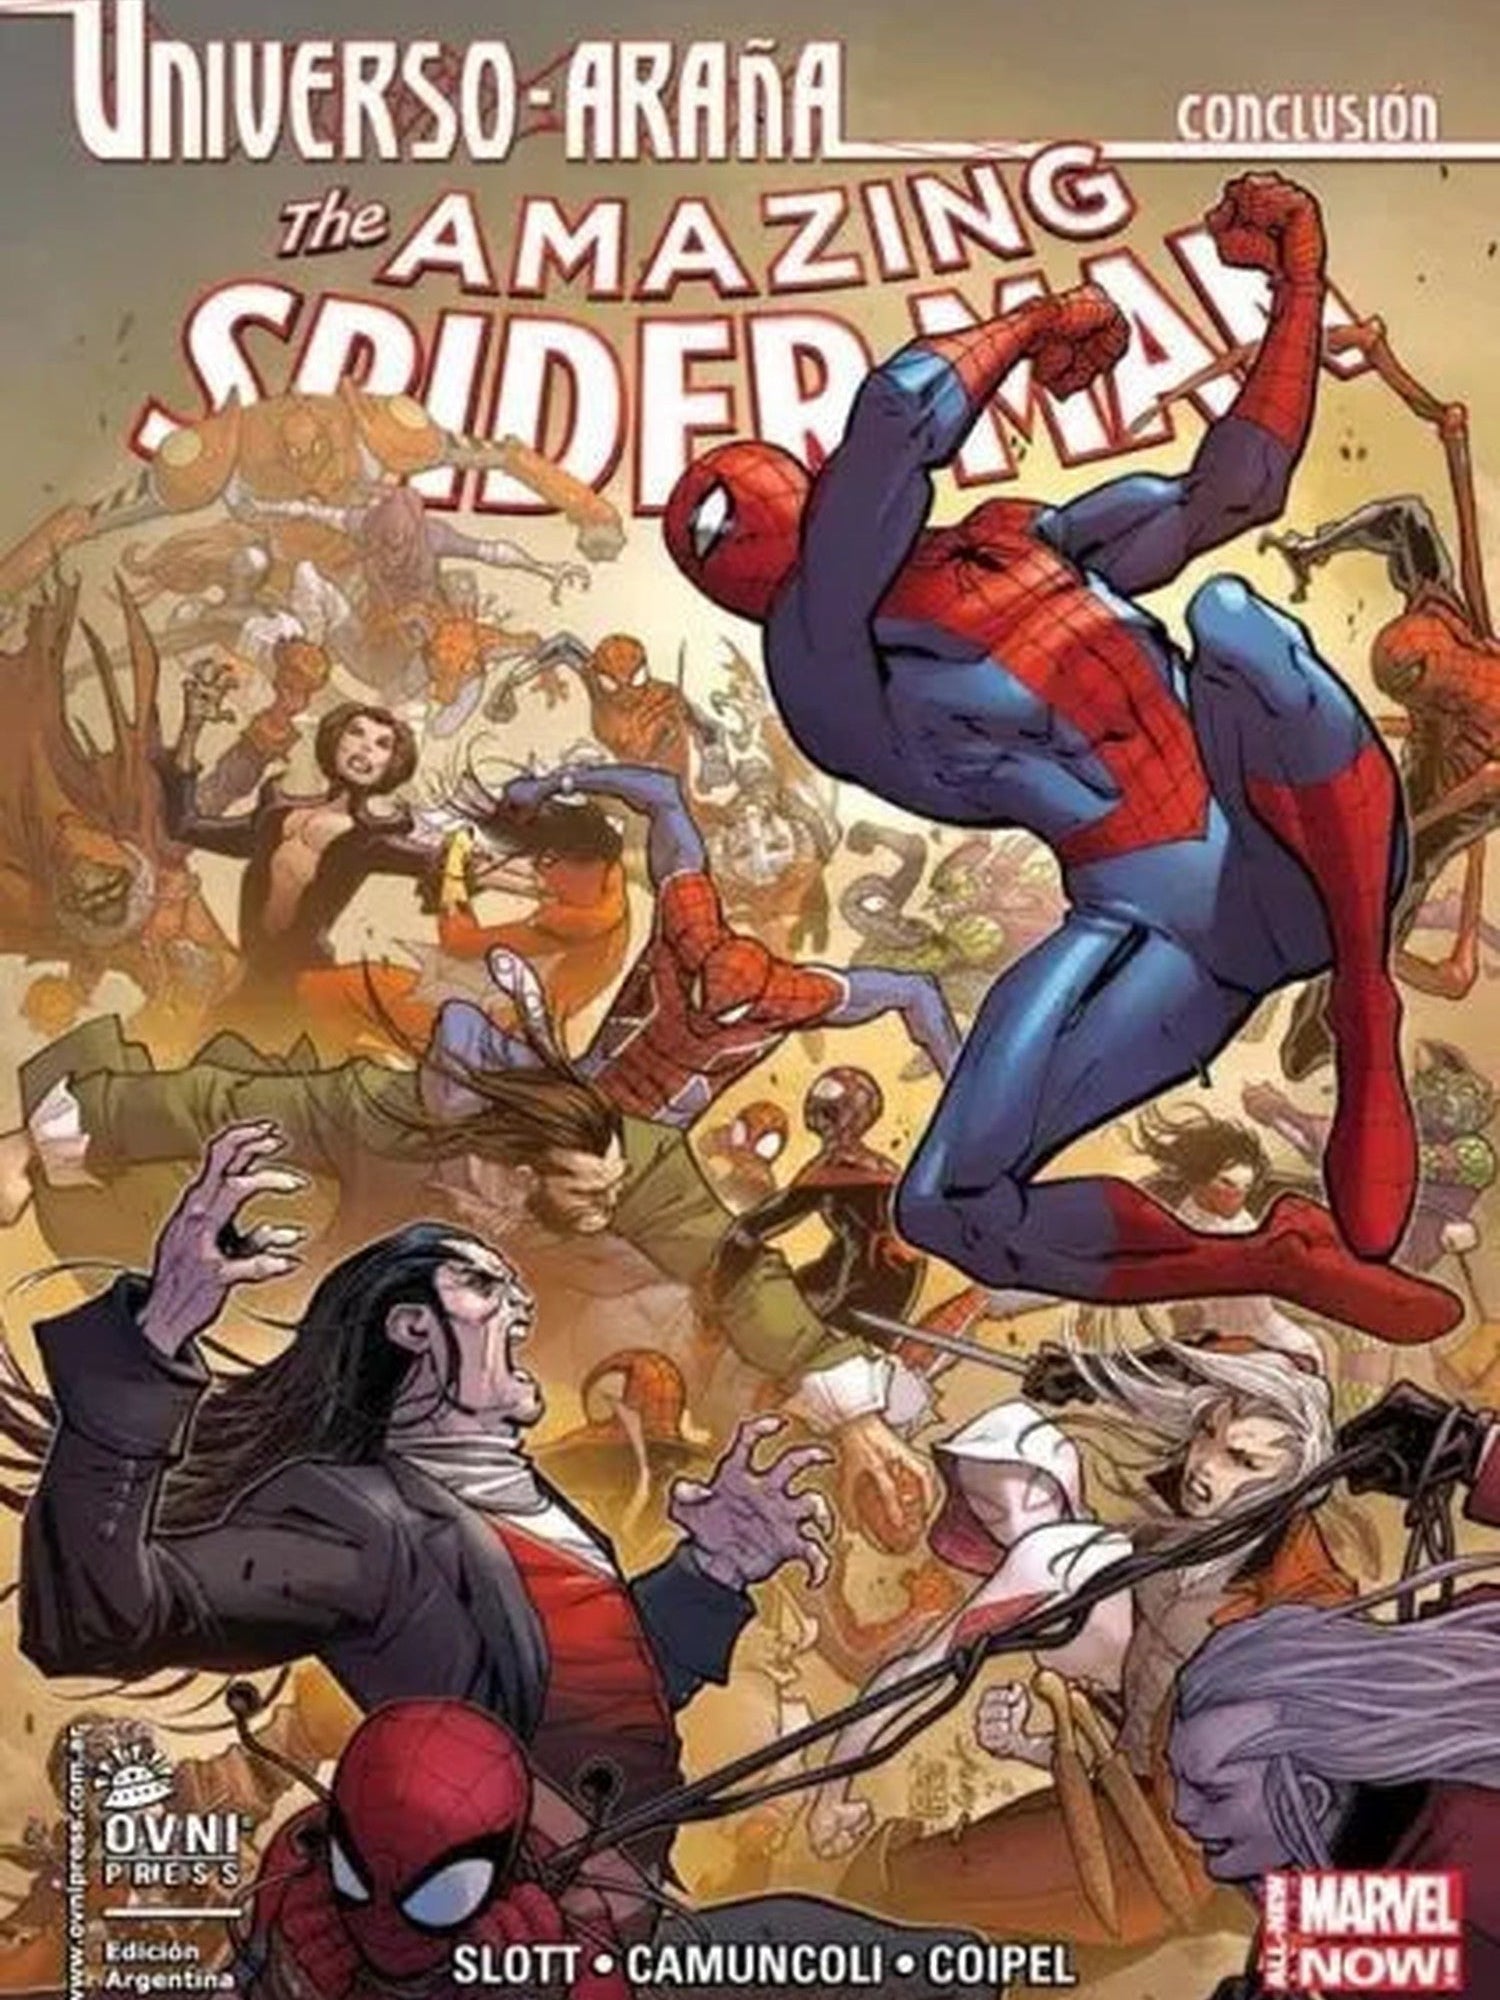 The Amazing Spider-man Vol. 05. Universo Araña Conclusion OVNI Press ENcuadrocomics